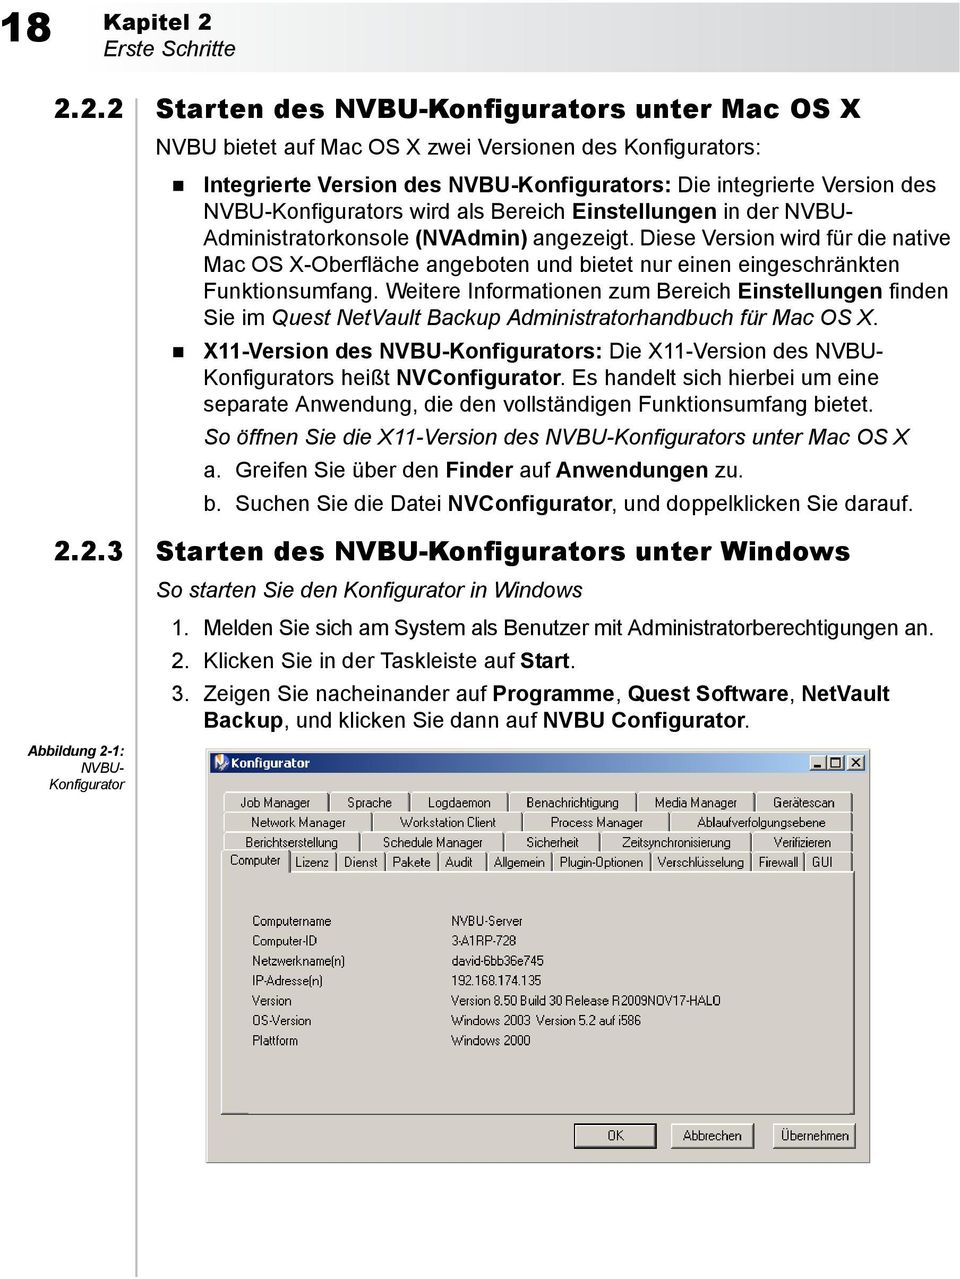 2.2 Starten des NVBU-Konfigurators unter Mac OS X NVBU bietet auf Mac OS X zwei Versionen des Konfigurators: Integrierte Version des NVBU-Konfigurators: Die integrierte Version des NVBU-Konfigurators